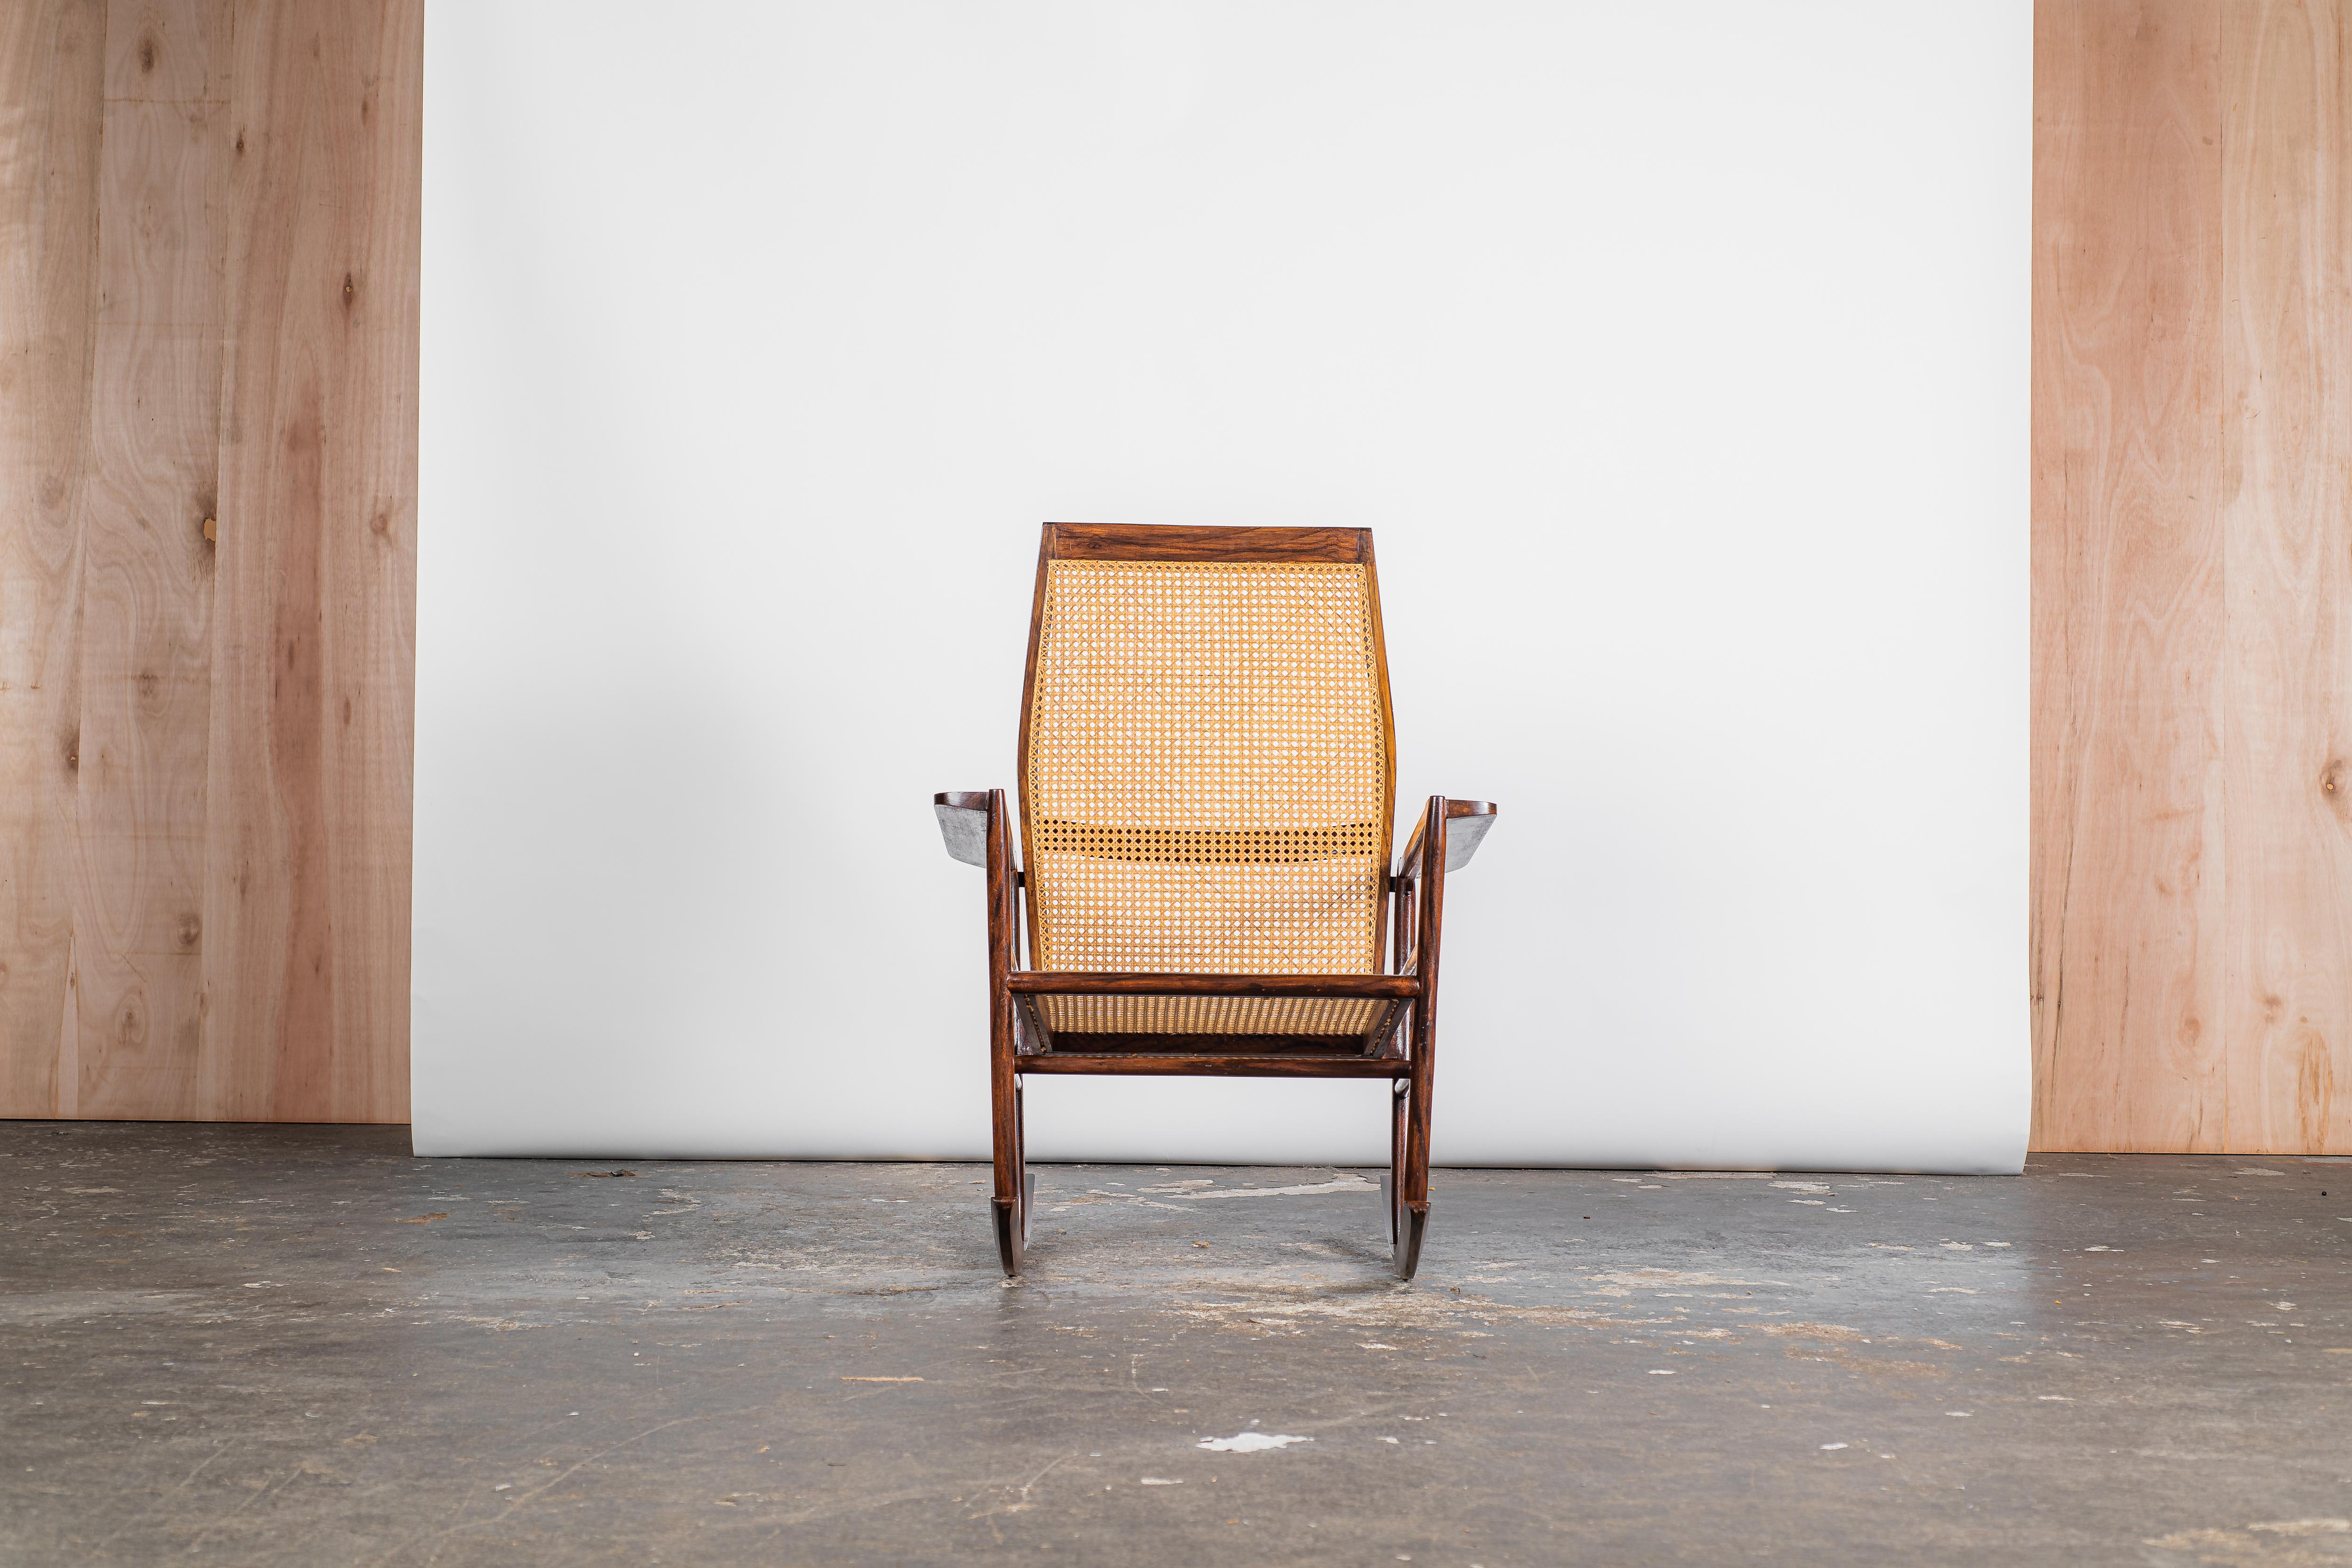 Dieser Schaukelstuhl aus dem Jahr 1947, der dem kreativen Genie von Joaquim Tenreiro entsprungen ist, verkörpert ein exquisites Zeugnis des Designs aus der Mitte des 20. Jahrhunderts. Das Gestell aus Hartholz, das elegant mit Sitz und Rückenlehne